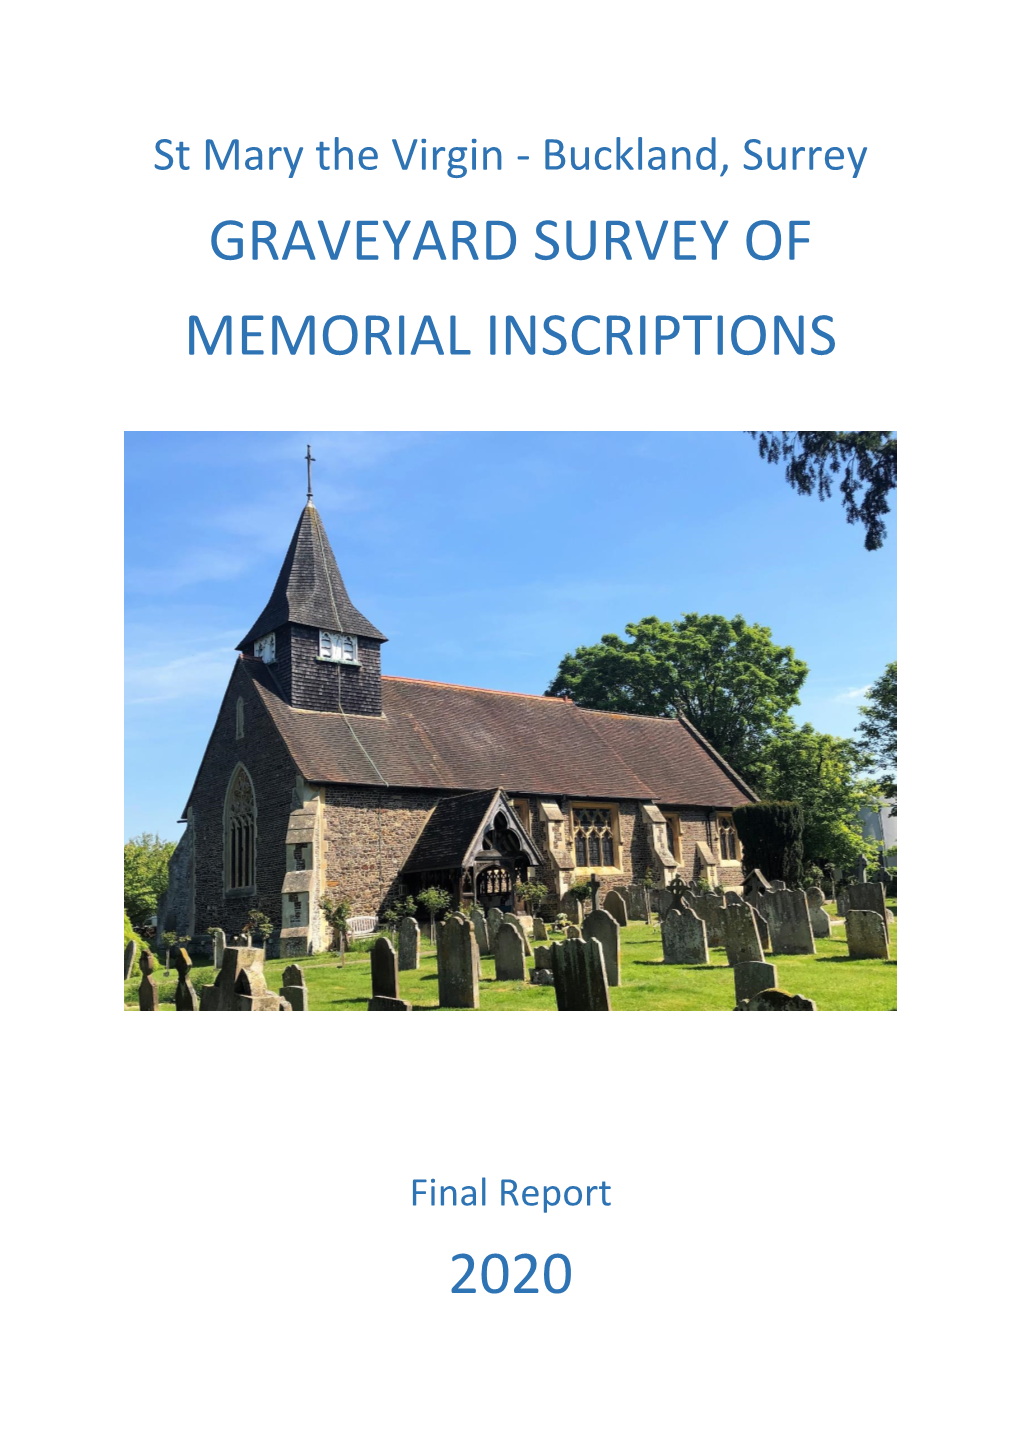 Graveyard Survey of Memorial Inscriptions 2020